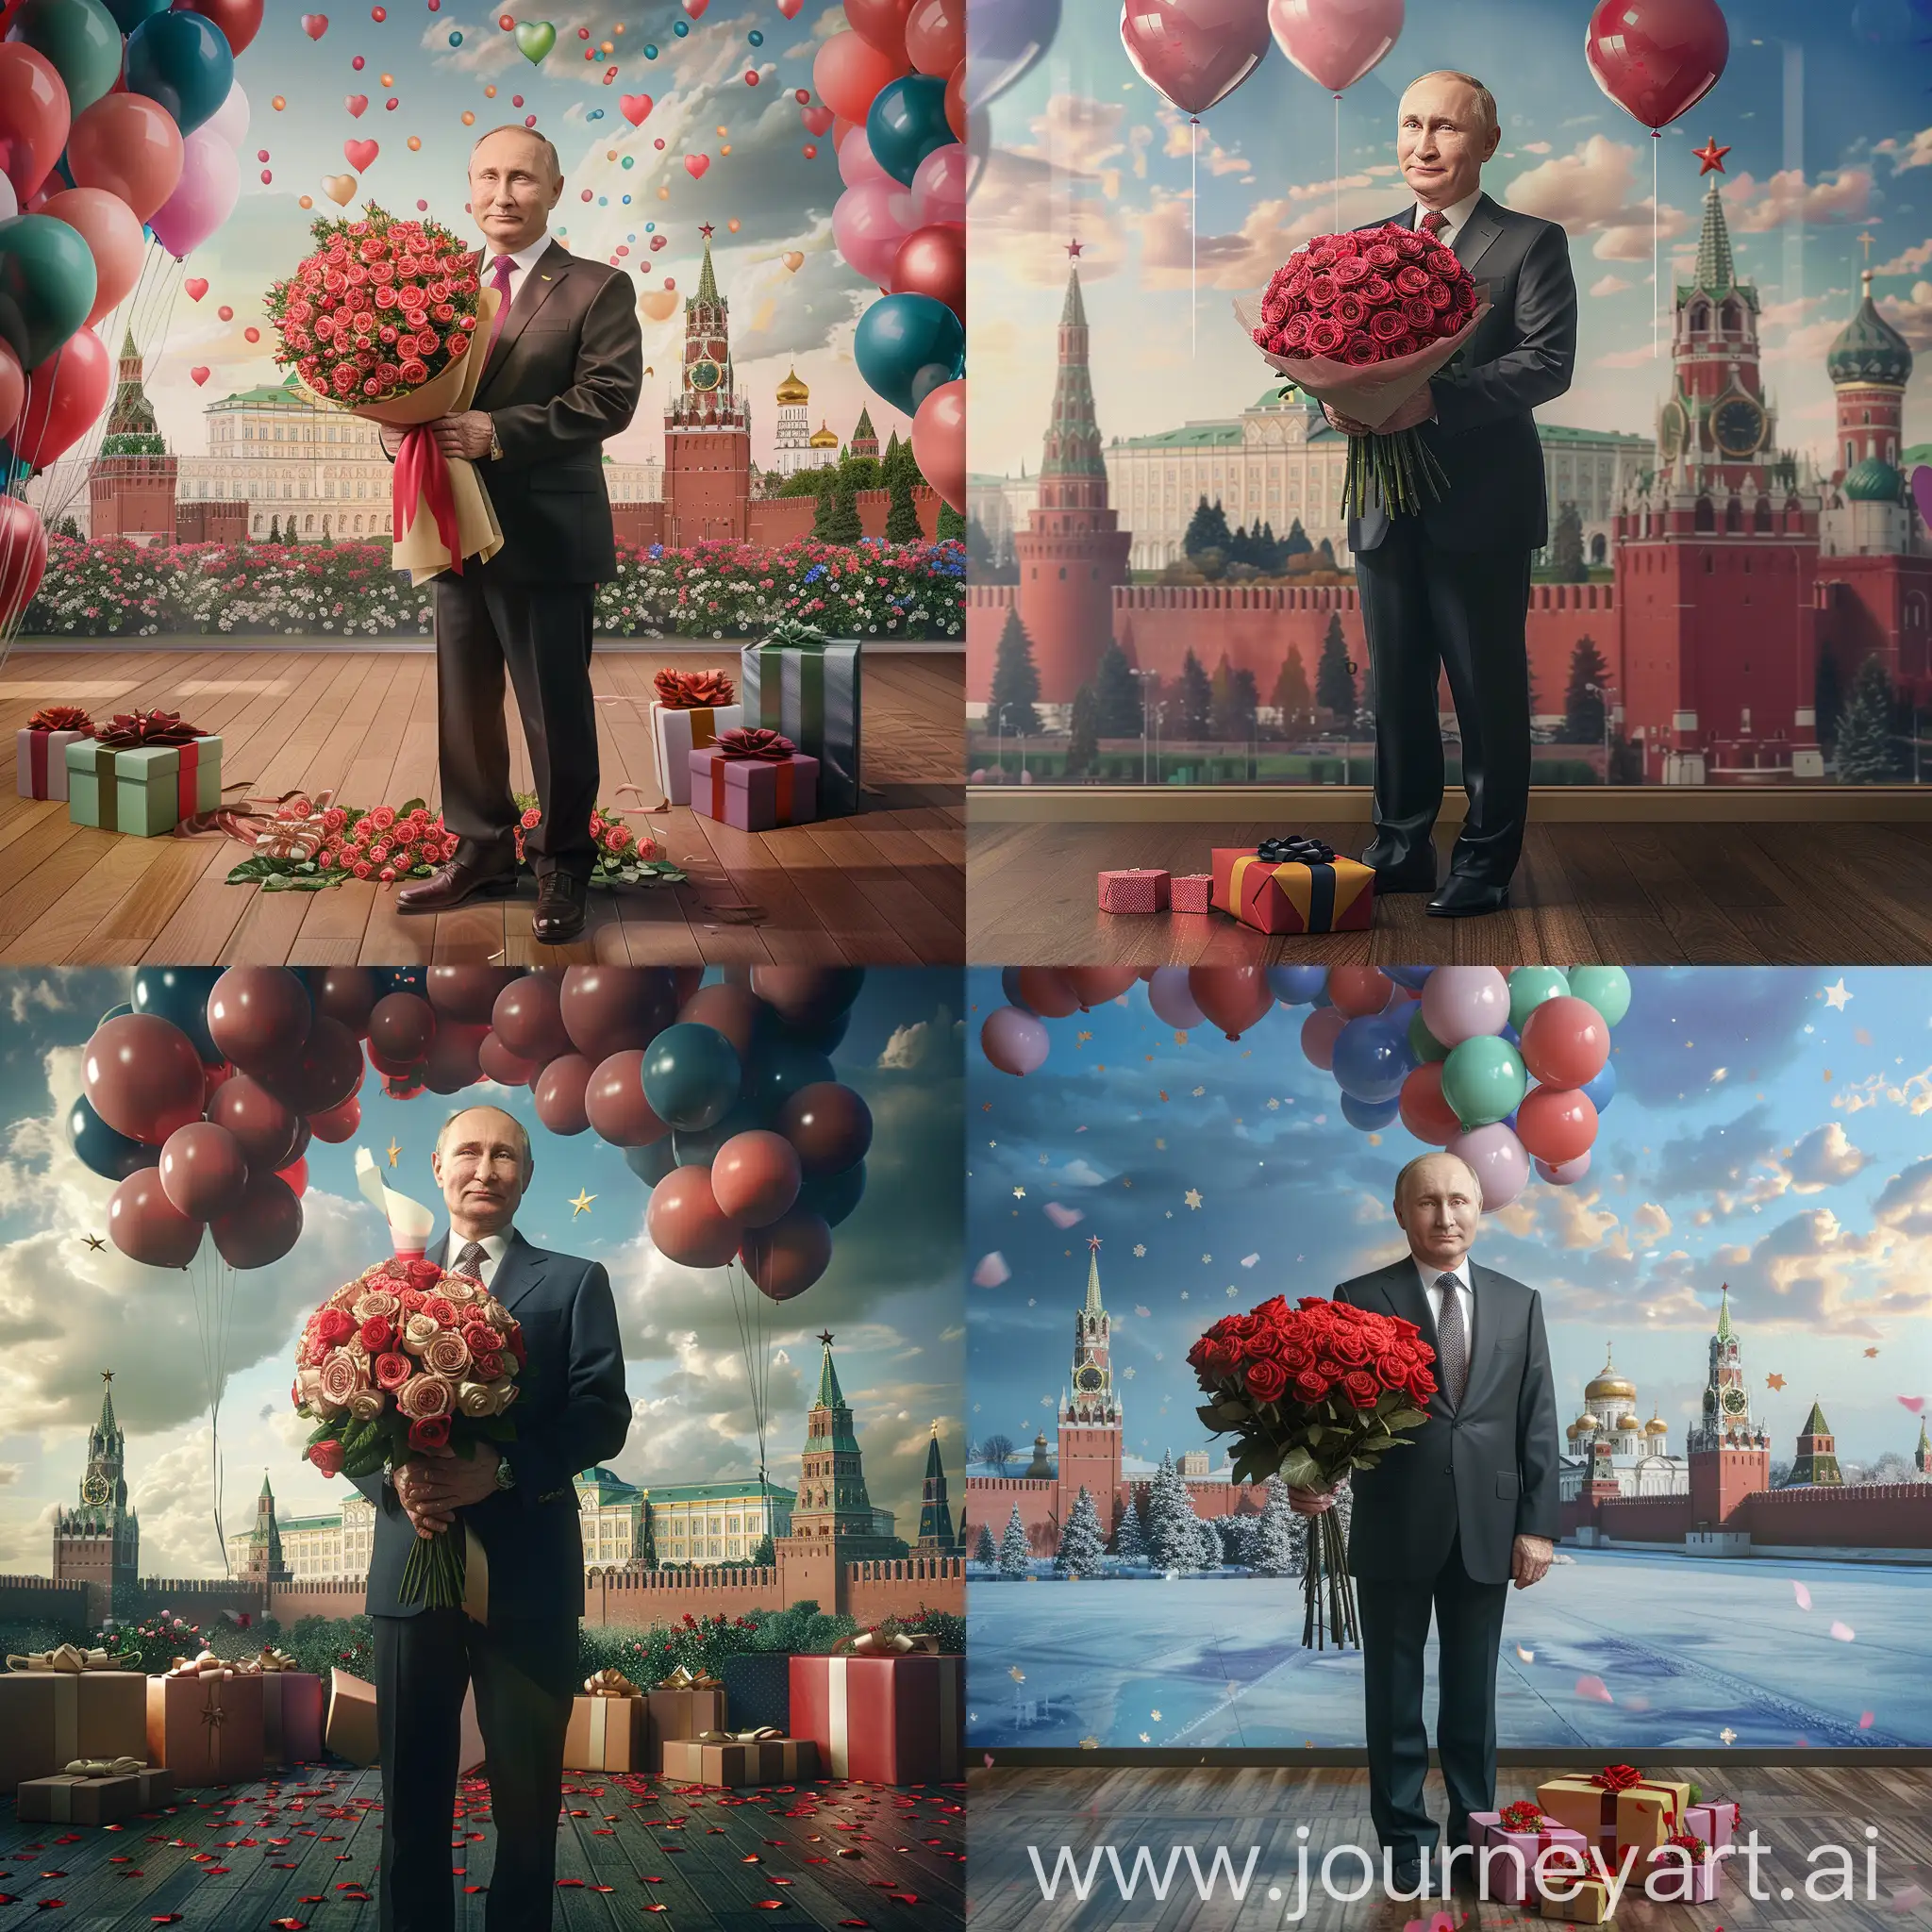 Владимир Путин стоит с букетом 101 роза, задний фон кремль, в полный рост, крупный план, реалистично, супер детализация, острый фокус, 8к, высокое разрешение, подарки на полу, шарики упёрлись в потолок